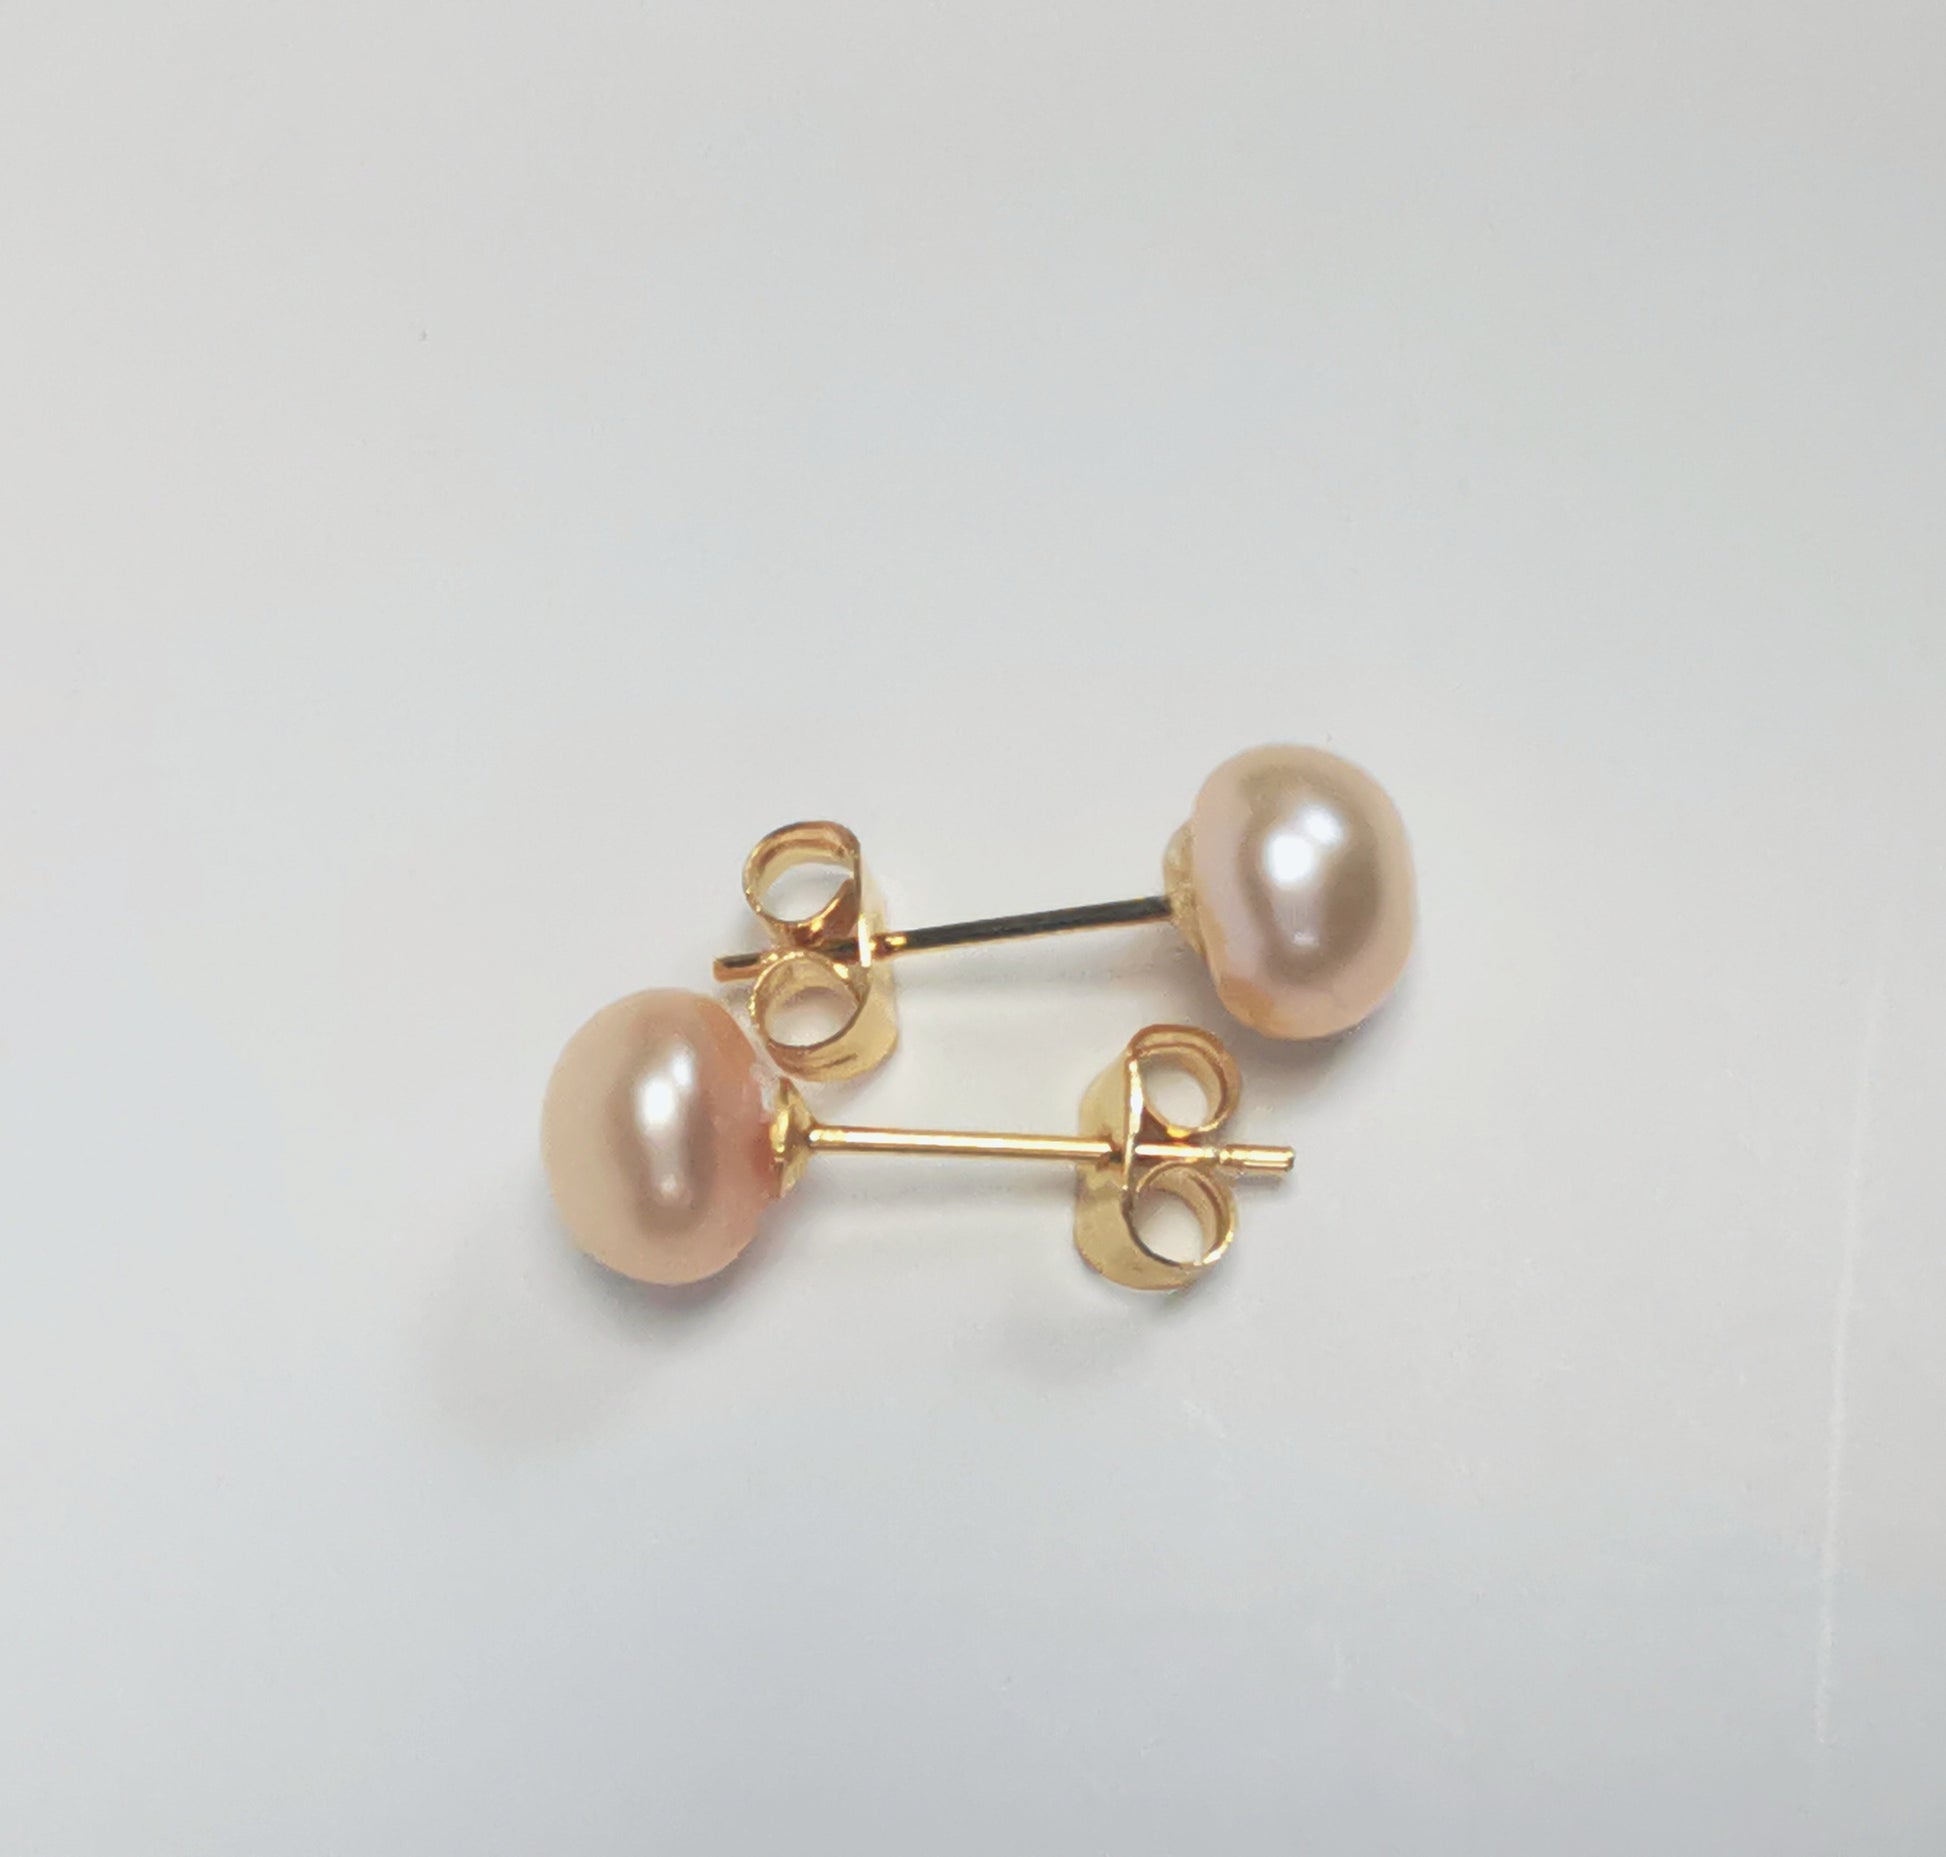 Boucles d'oreilles perles de culture rose 7mm sur clous plaqués or. Présentées cote à cote à l'horizontale, boucle de dessus perle à droite, celle de dessous, perle à gauche sur un fond blanc. Vue de dessus.